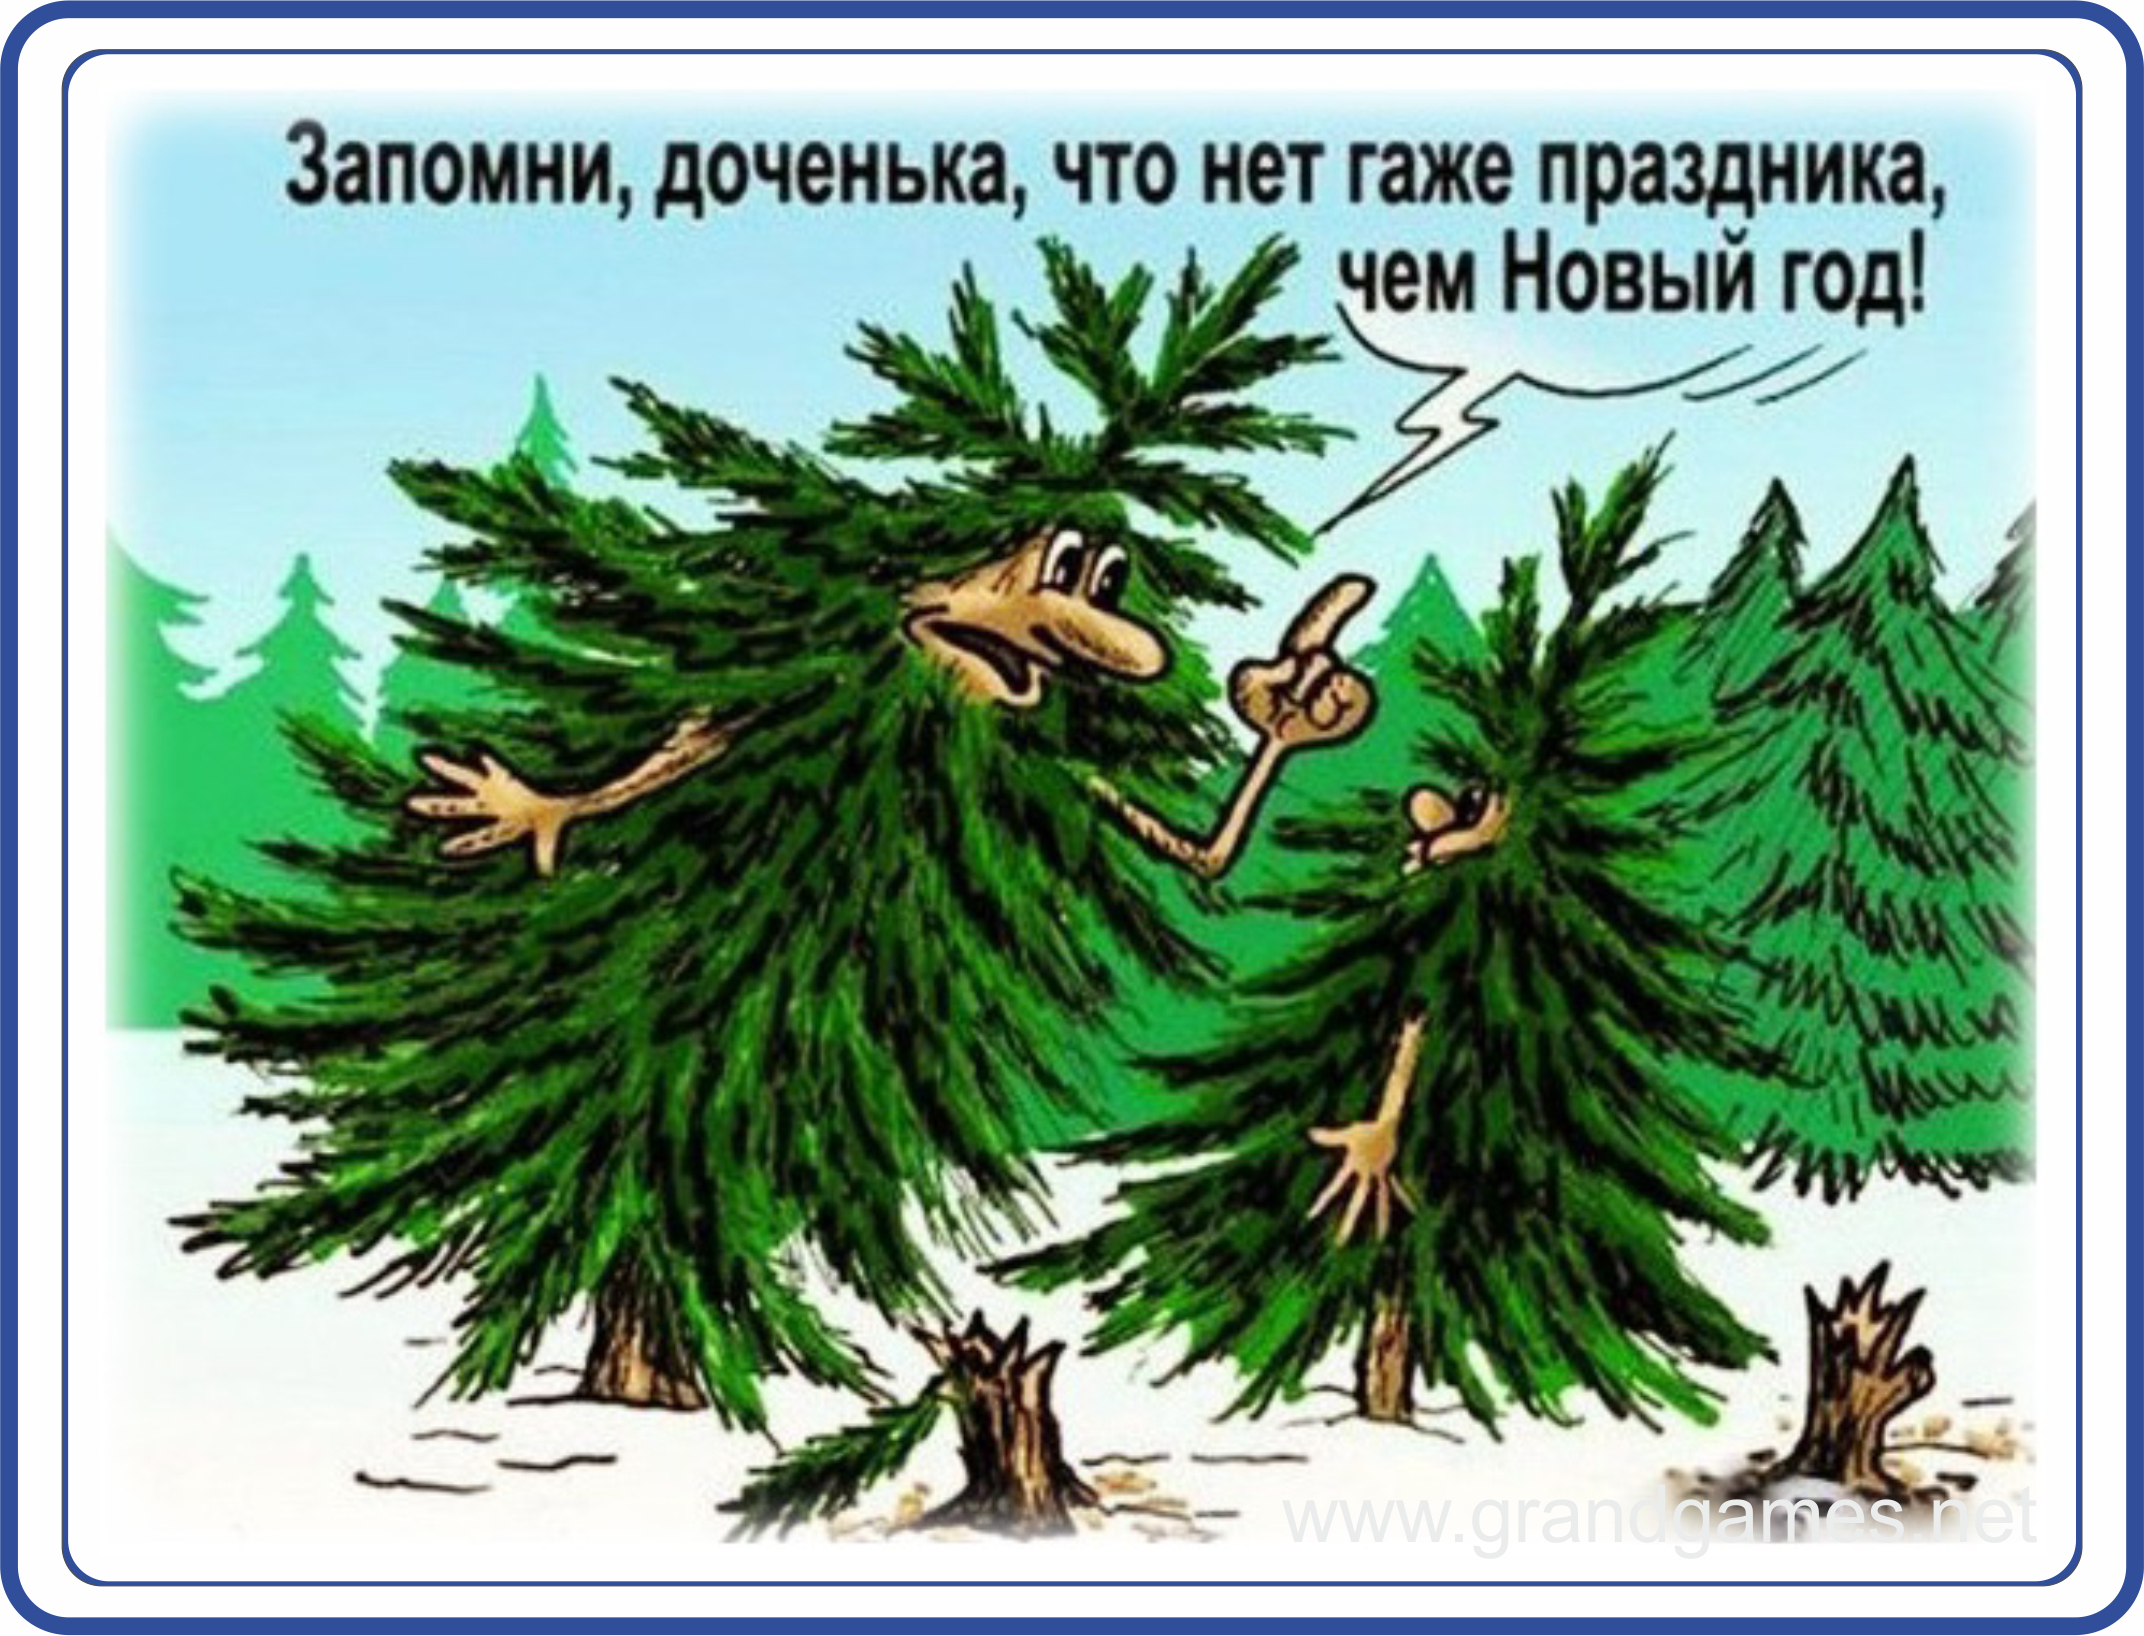 Жалко елки. Новогодняя елка карикатура. Шутки про ёлочку. Елки в лесу карикатура. Шутки про елку.